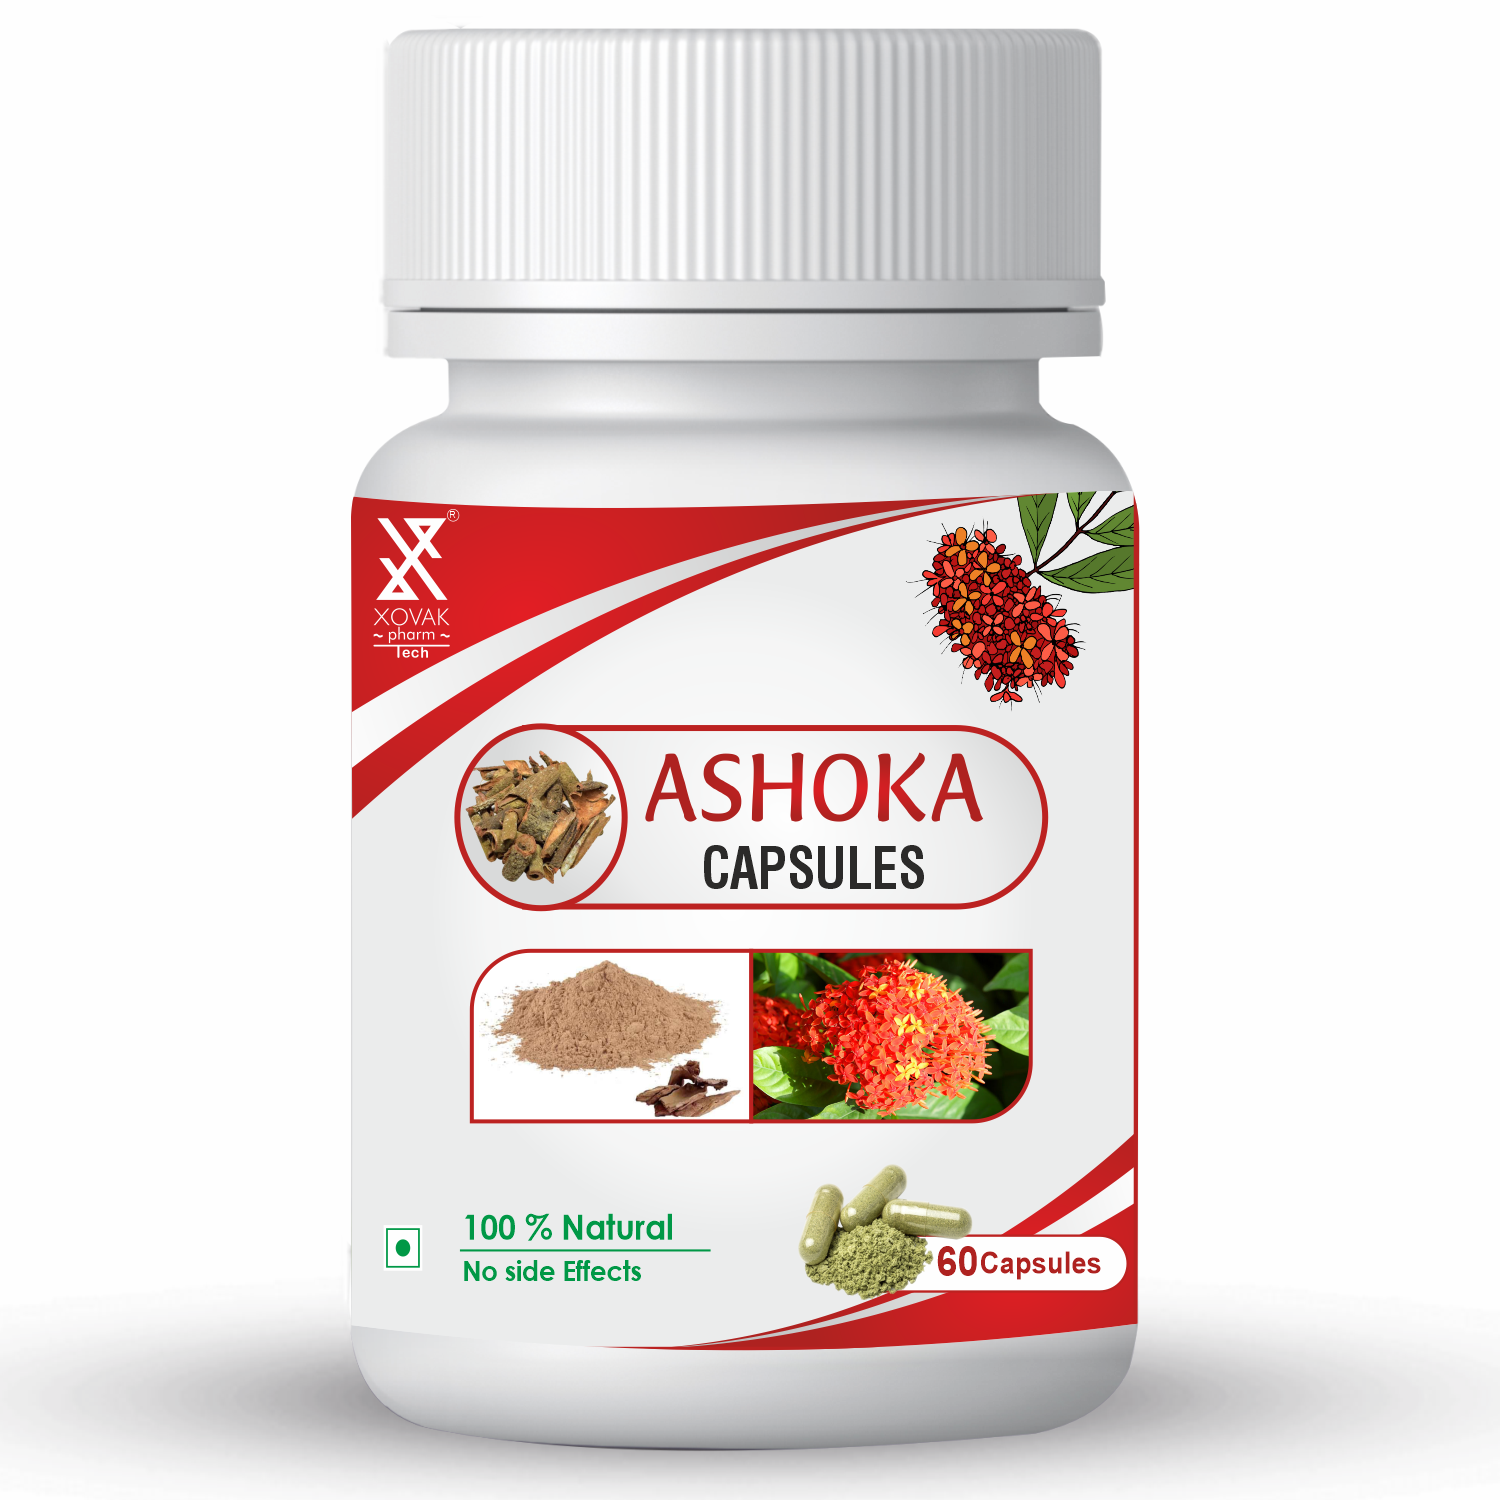 Buy Xovak Organic Ashoka Capsules (60caps) at Best Price Online